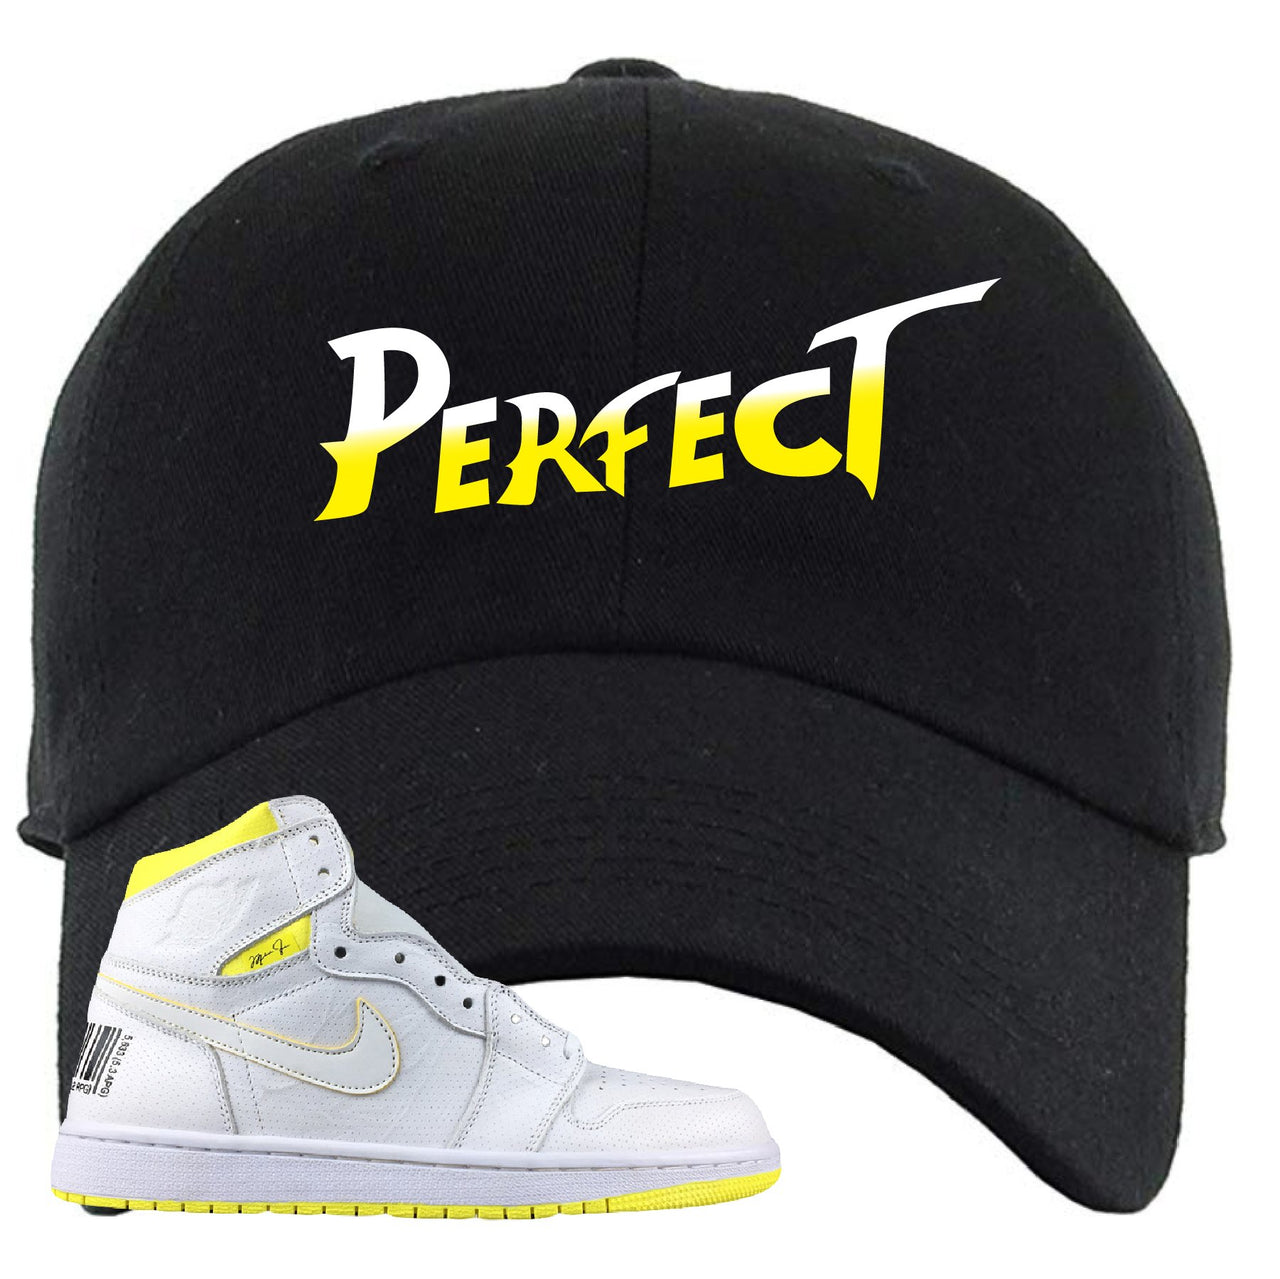 Air Jordan 1 First Class Flight Street Fight Perfect Black Sneaker Matching Dad Hat